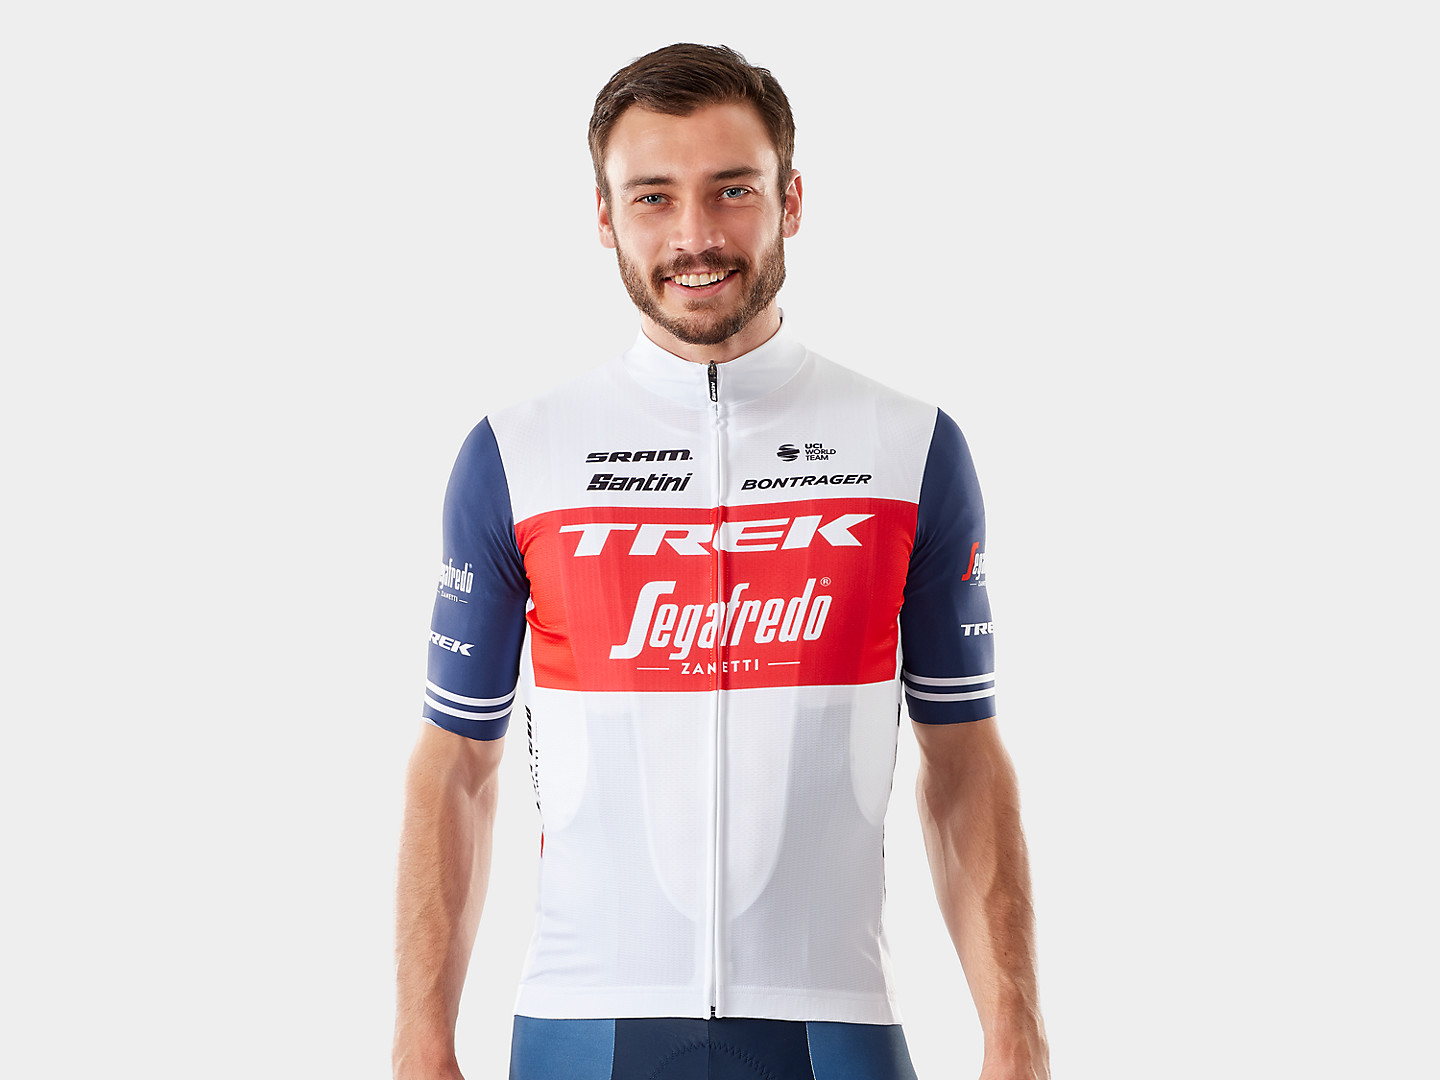 Camiseta de ciclismo masculina, réplica da versão de competição da Equipe Trek-Segafredo fabricada pela Santini